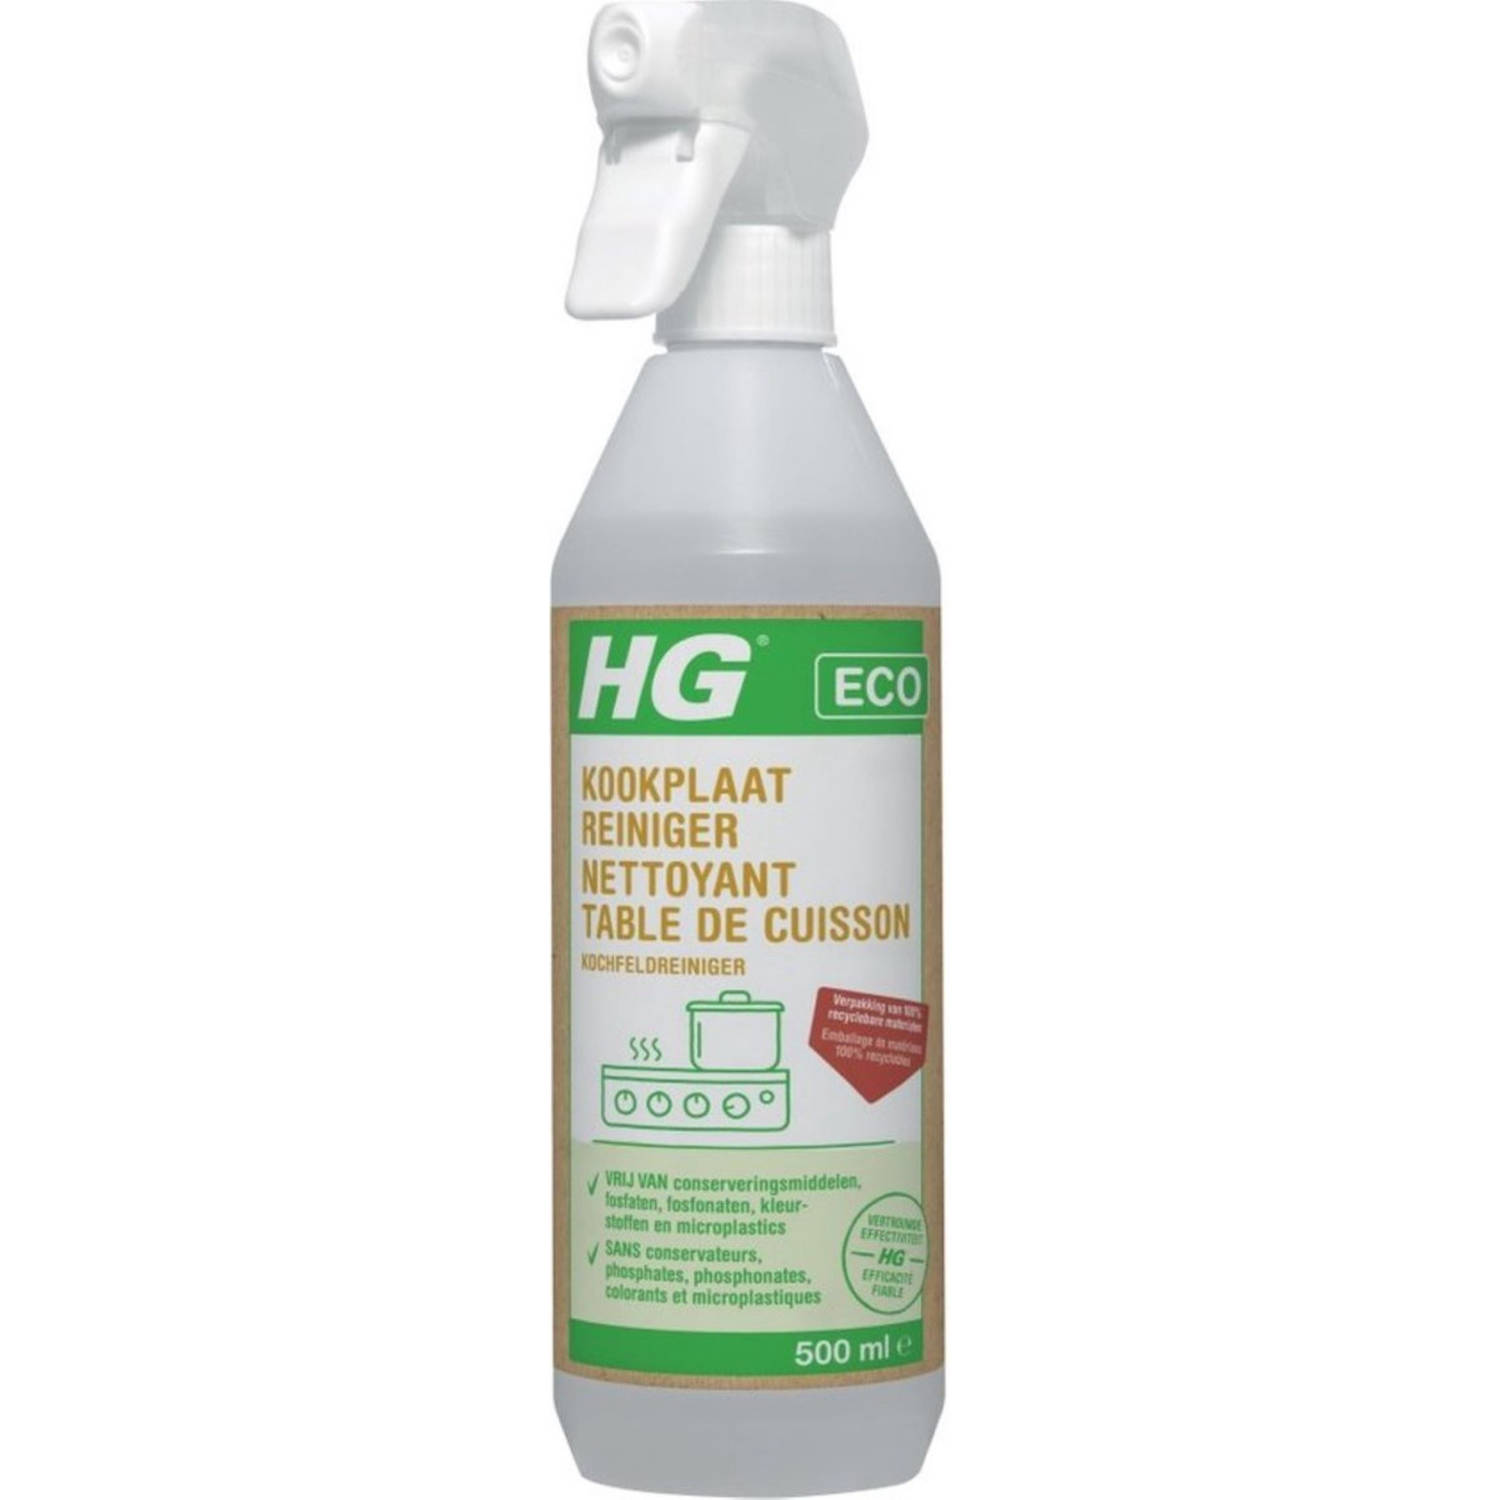 HG ECO kookplaatreiniger 2 Stuks! 500 ml de reiniger die veilig en effectief uw kookplaat schoonmaak